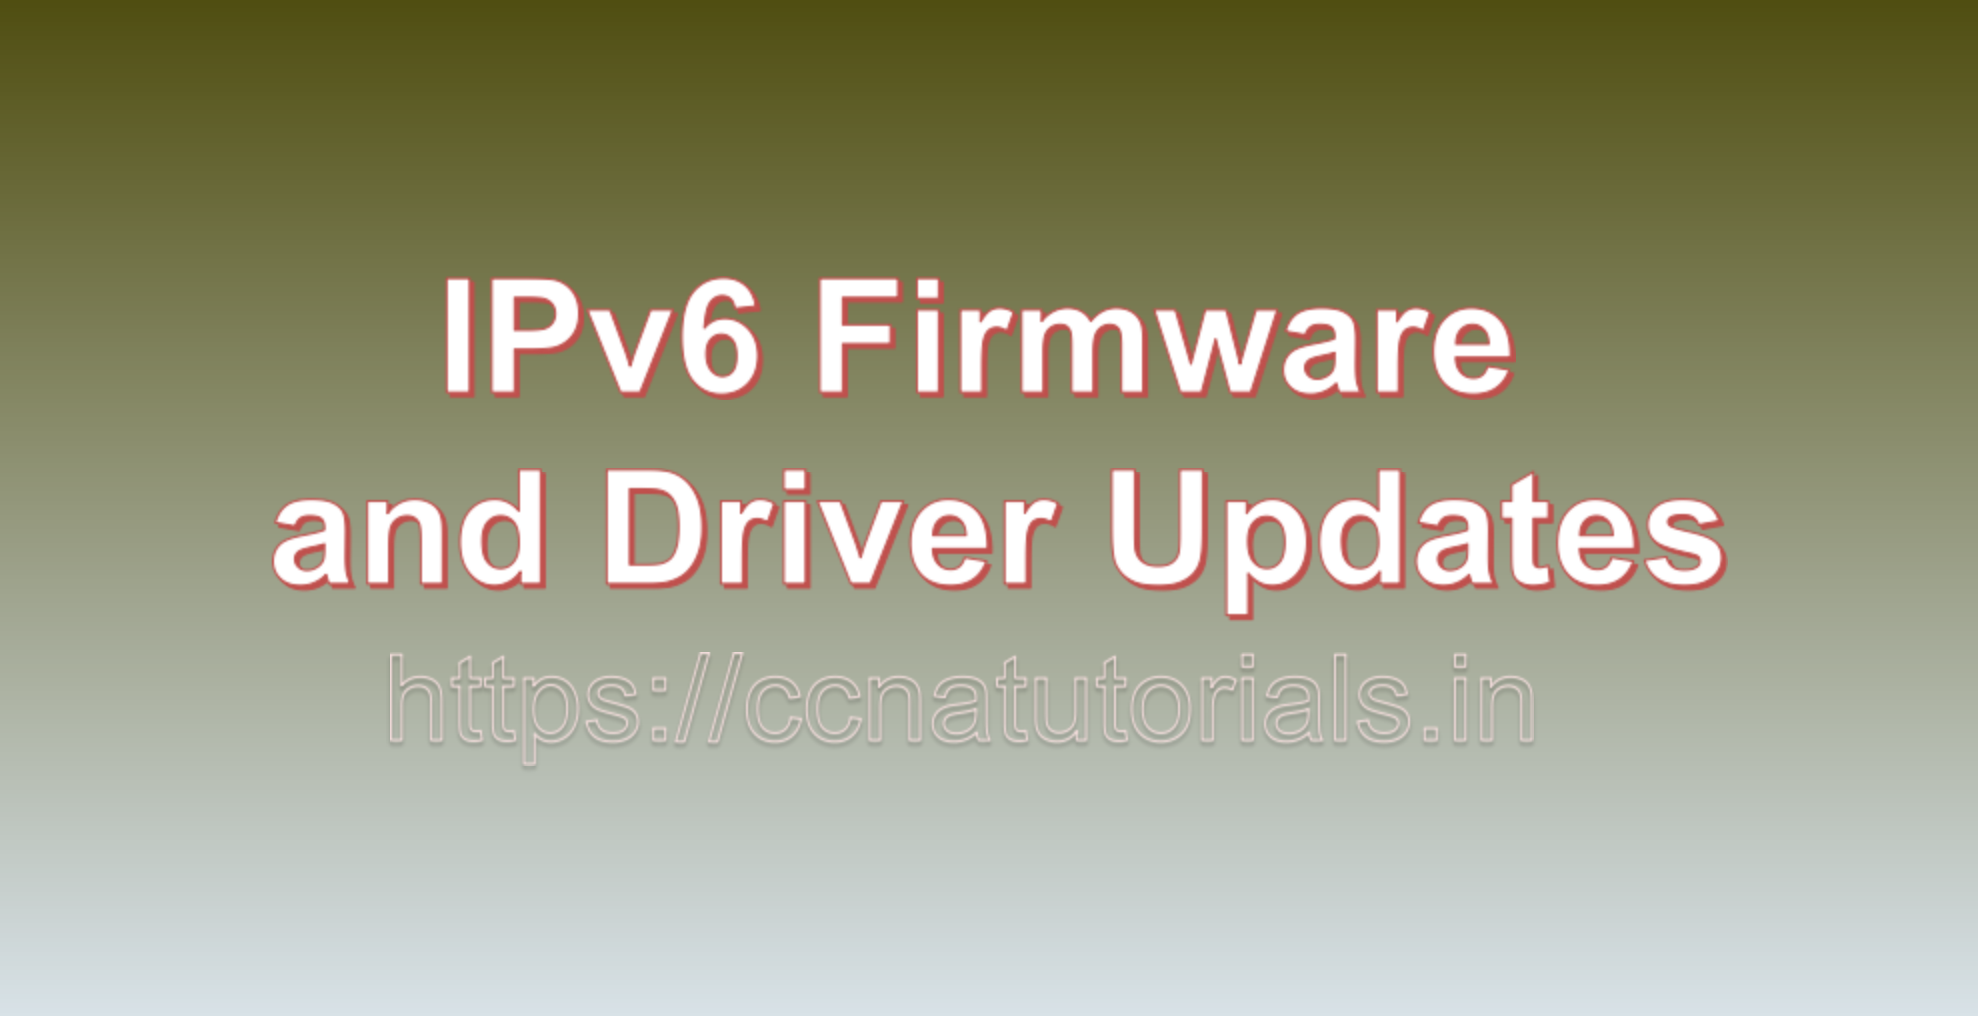 IPv6 Firmware and Driver Updates, ccna, ccna tutorials